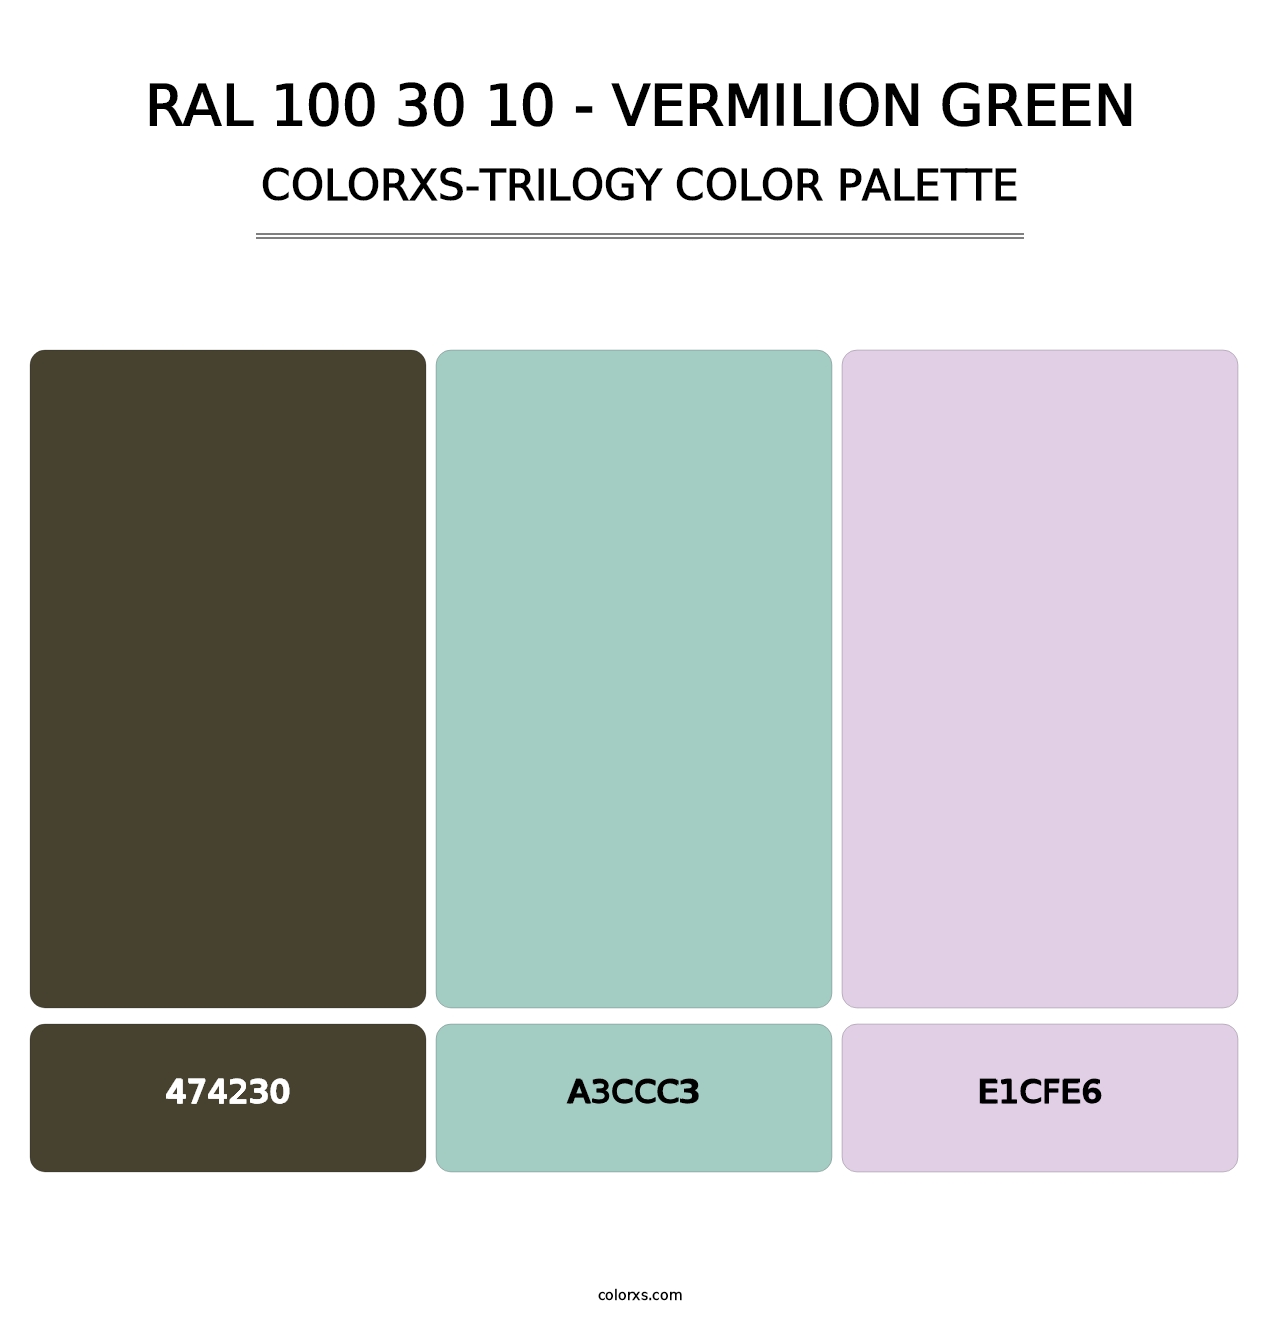 RAL 100 30 10 - Vermilion Green - Colorxs Trilogy Palette